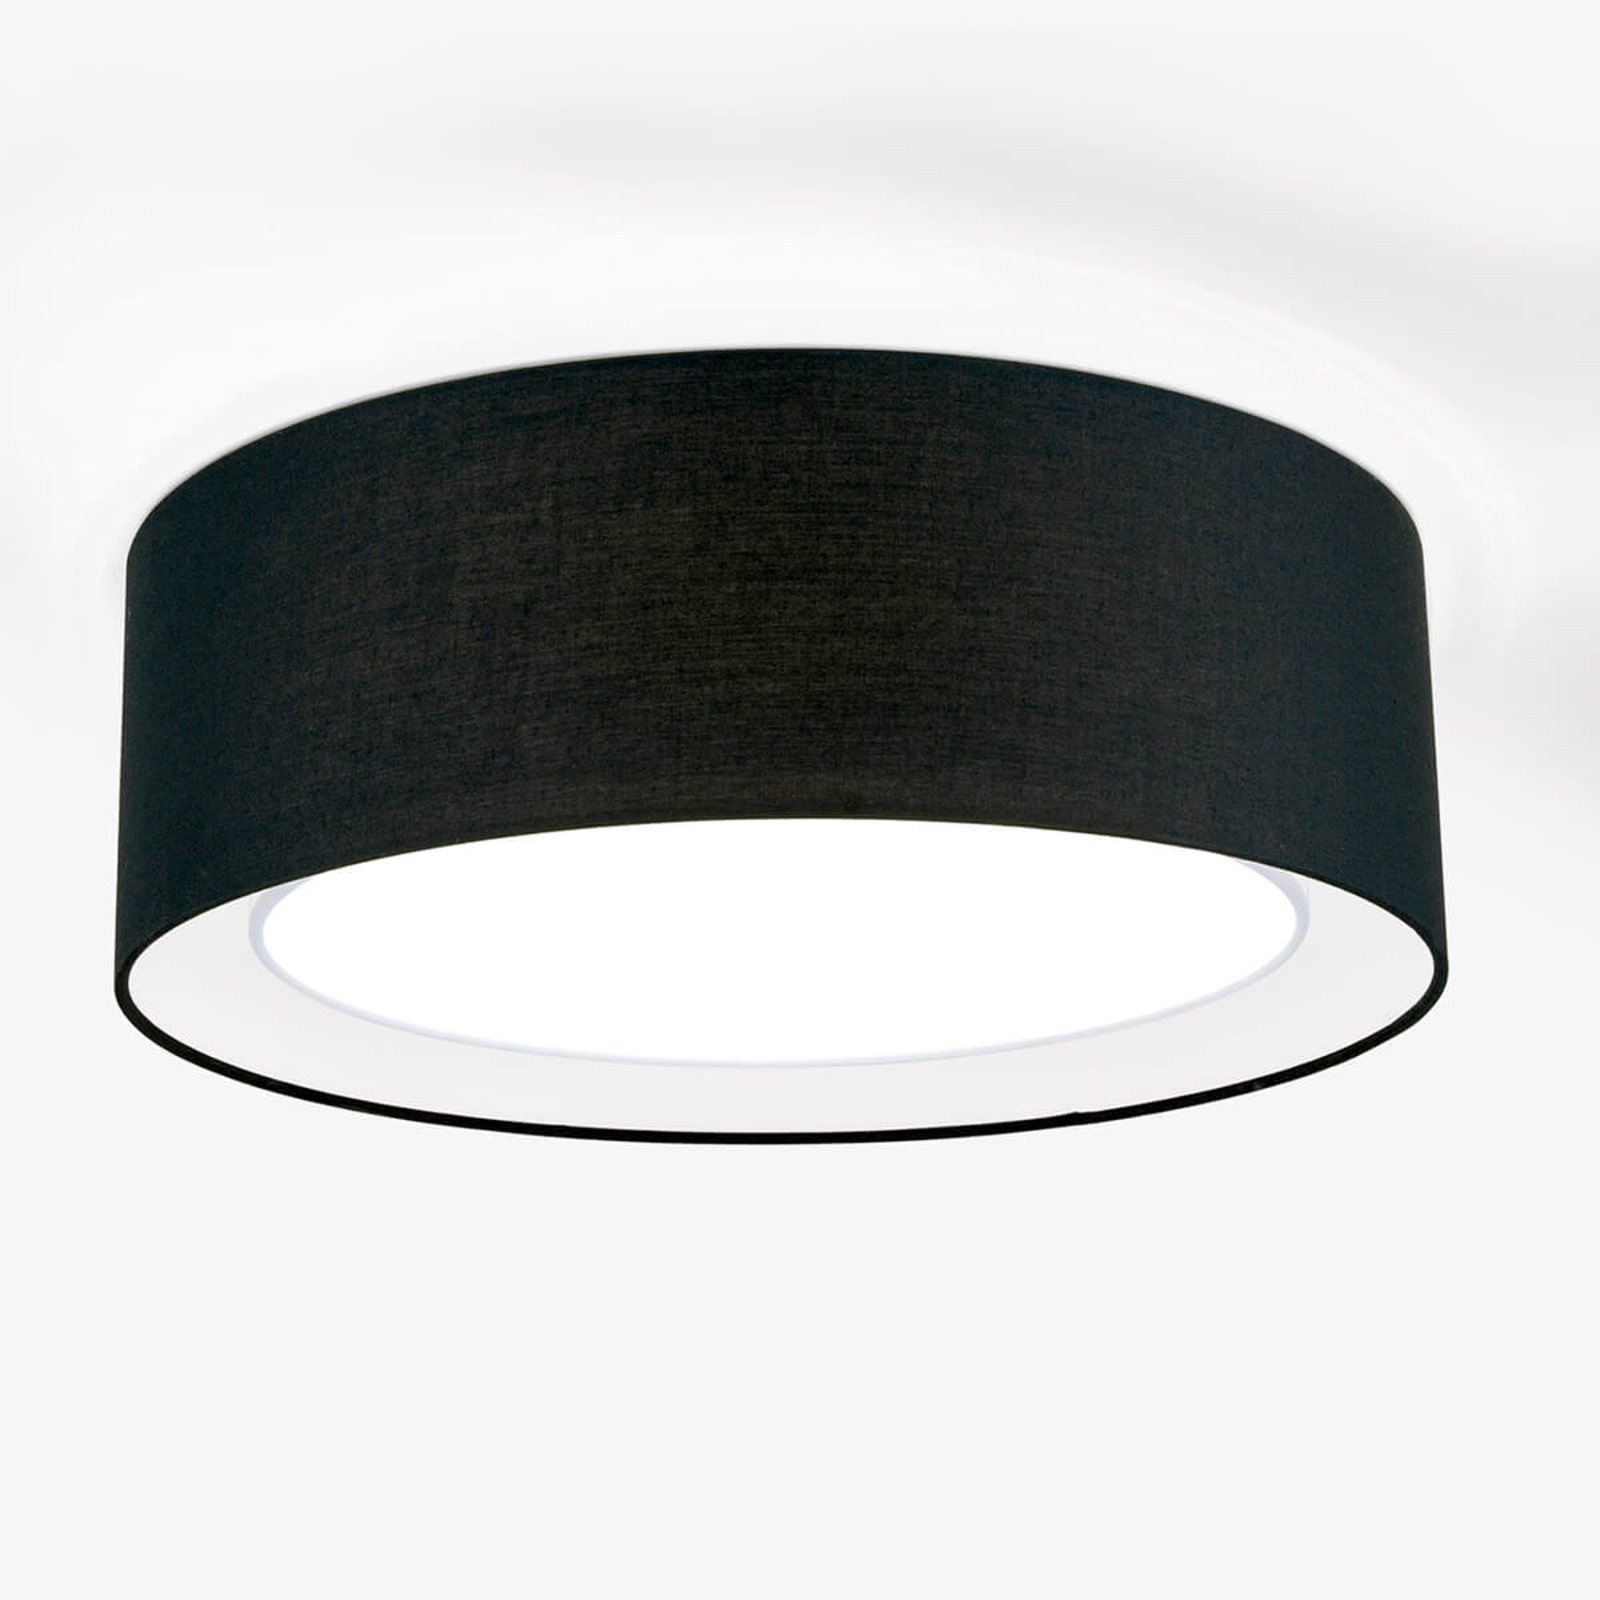 Round fabric ceiling light Antoni in black